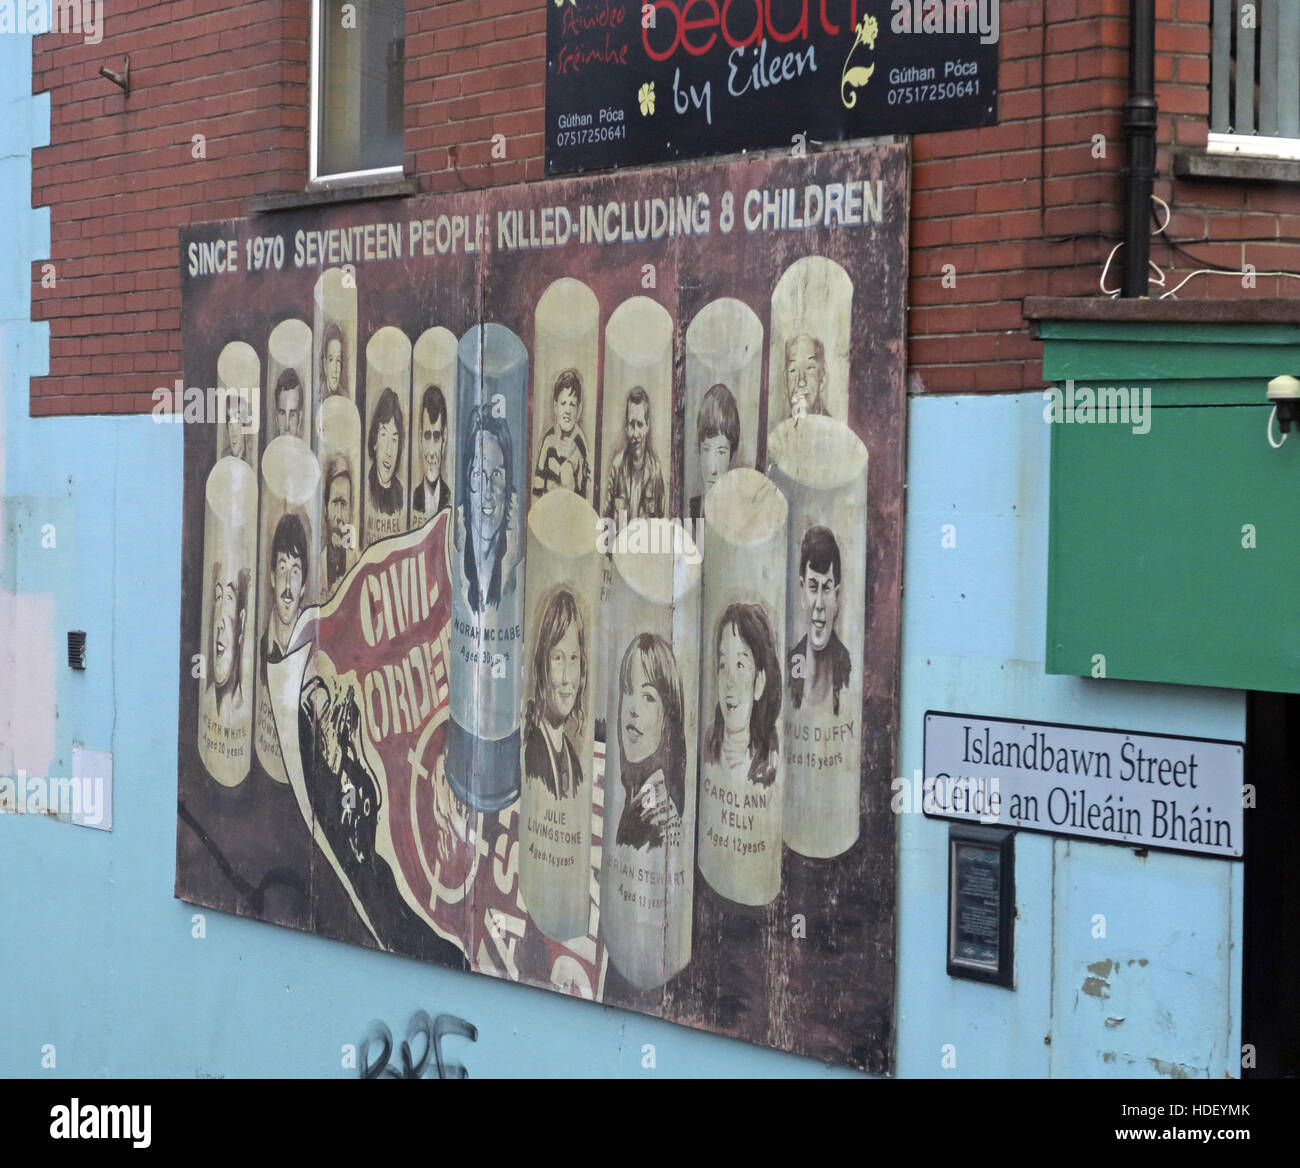 L'ordre civil,murale l'Ouest de Belfast, Irlande du Nord, Royaume-Uni Banque D'Images